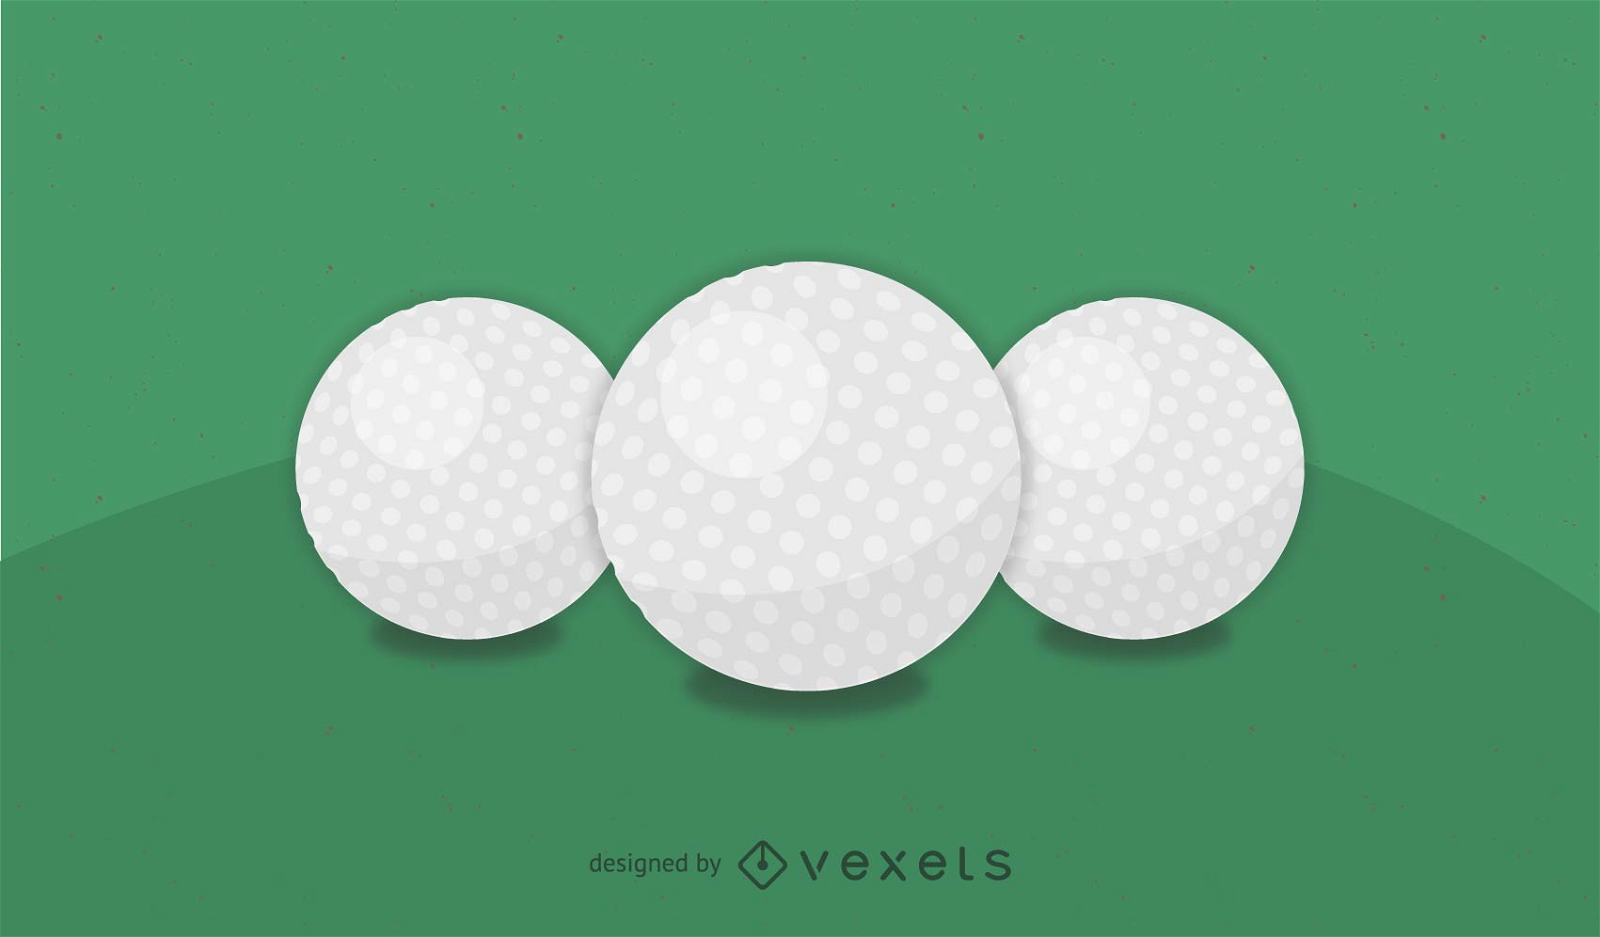 golf ball vector